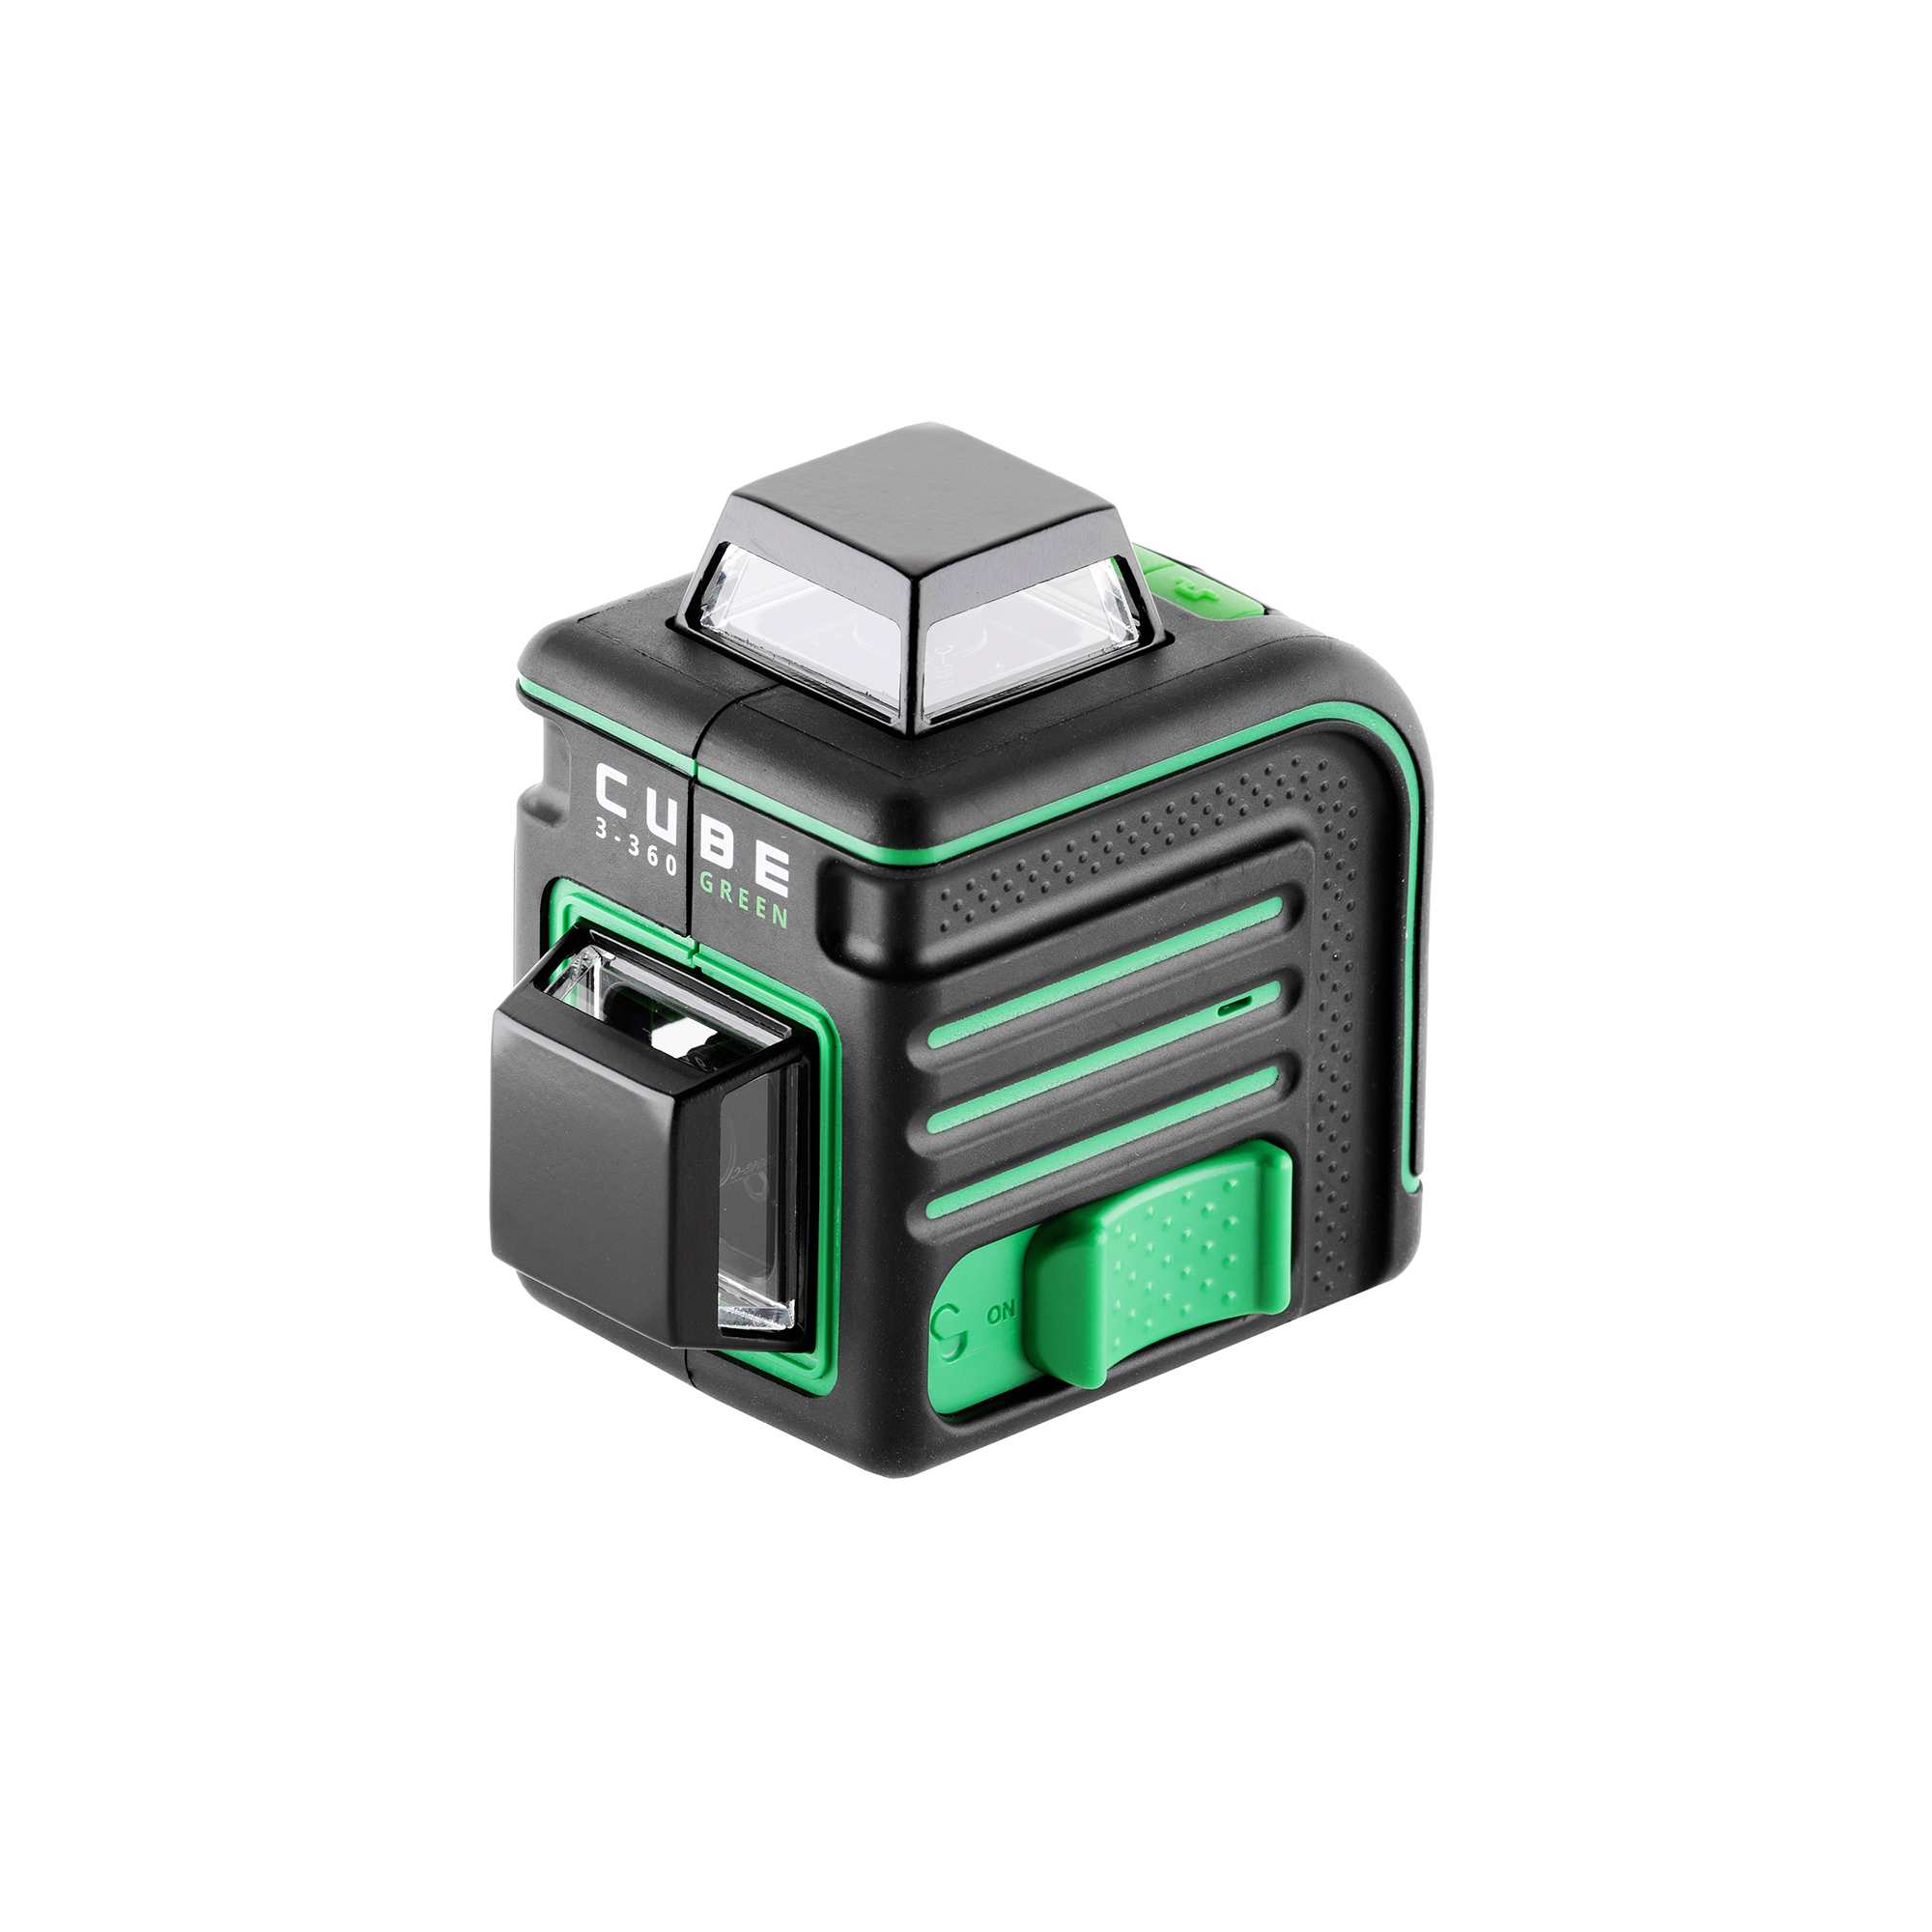 Лазерный уровень ada cube 360 green